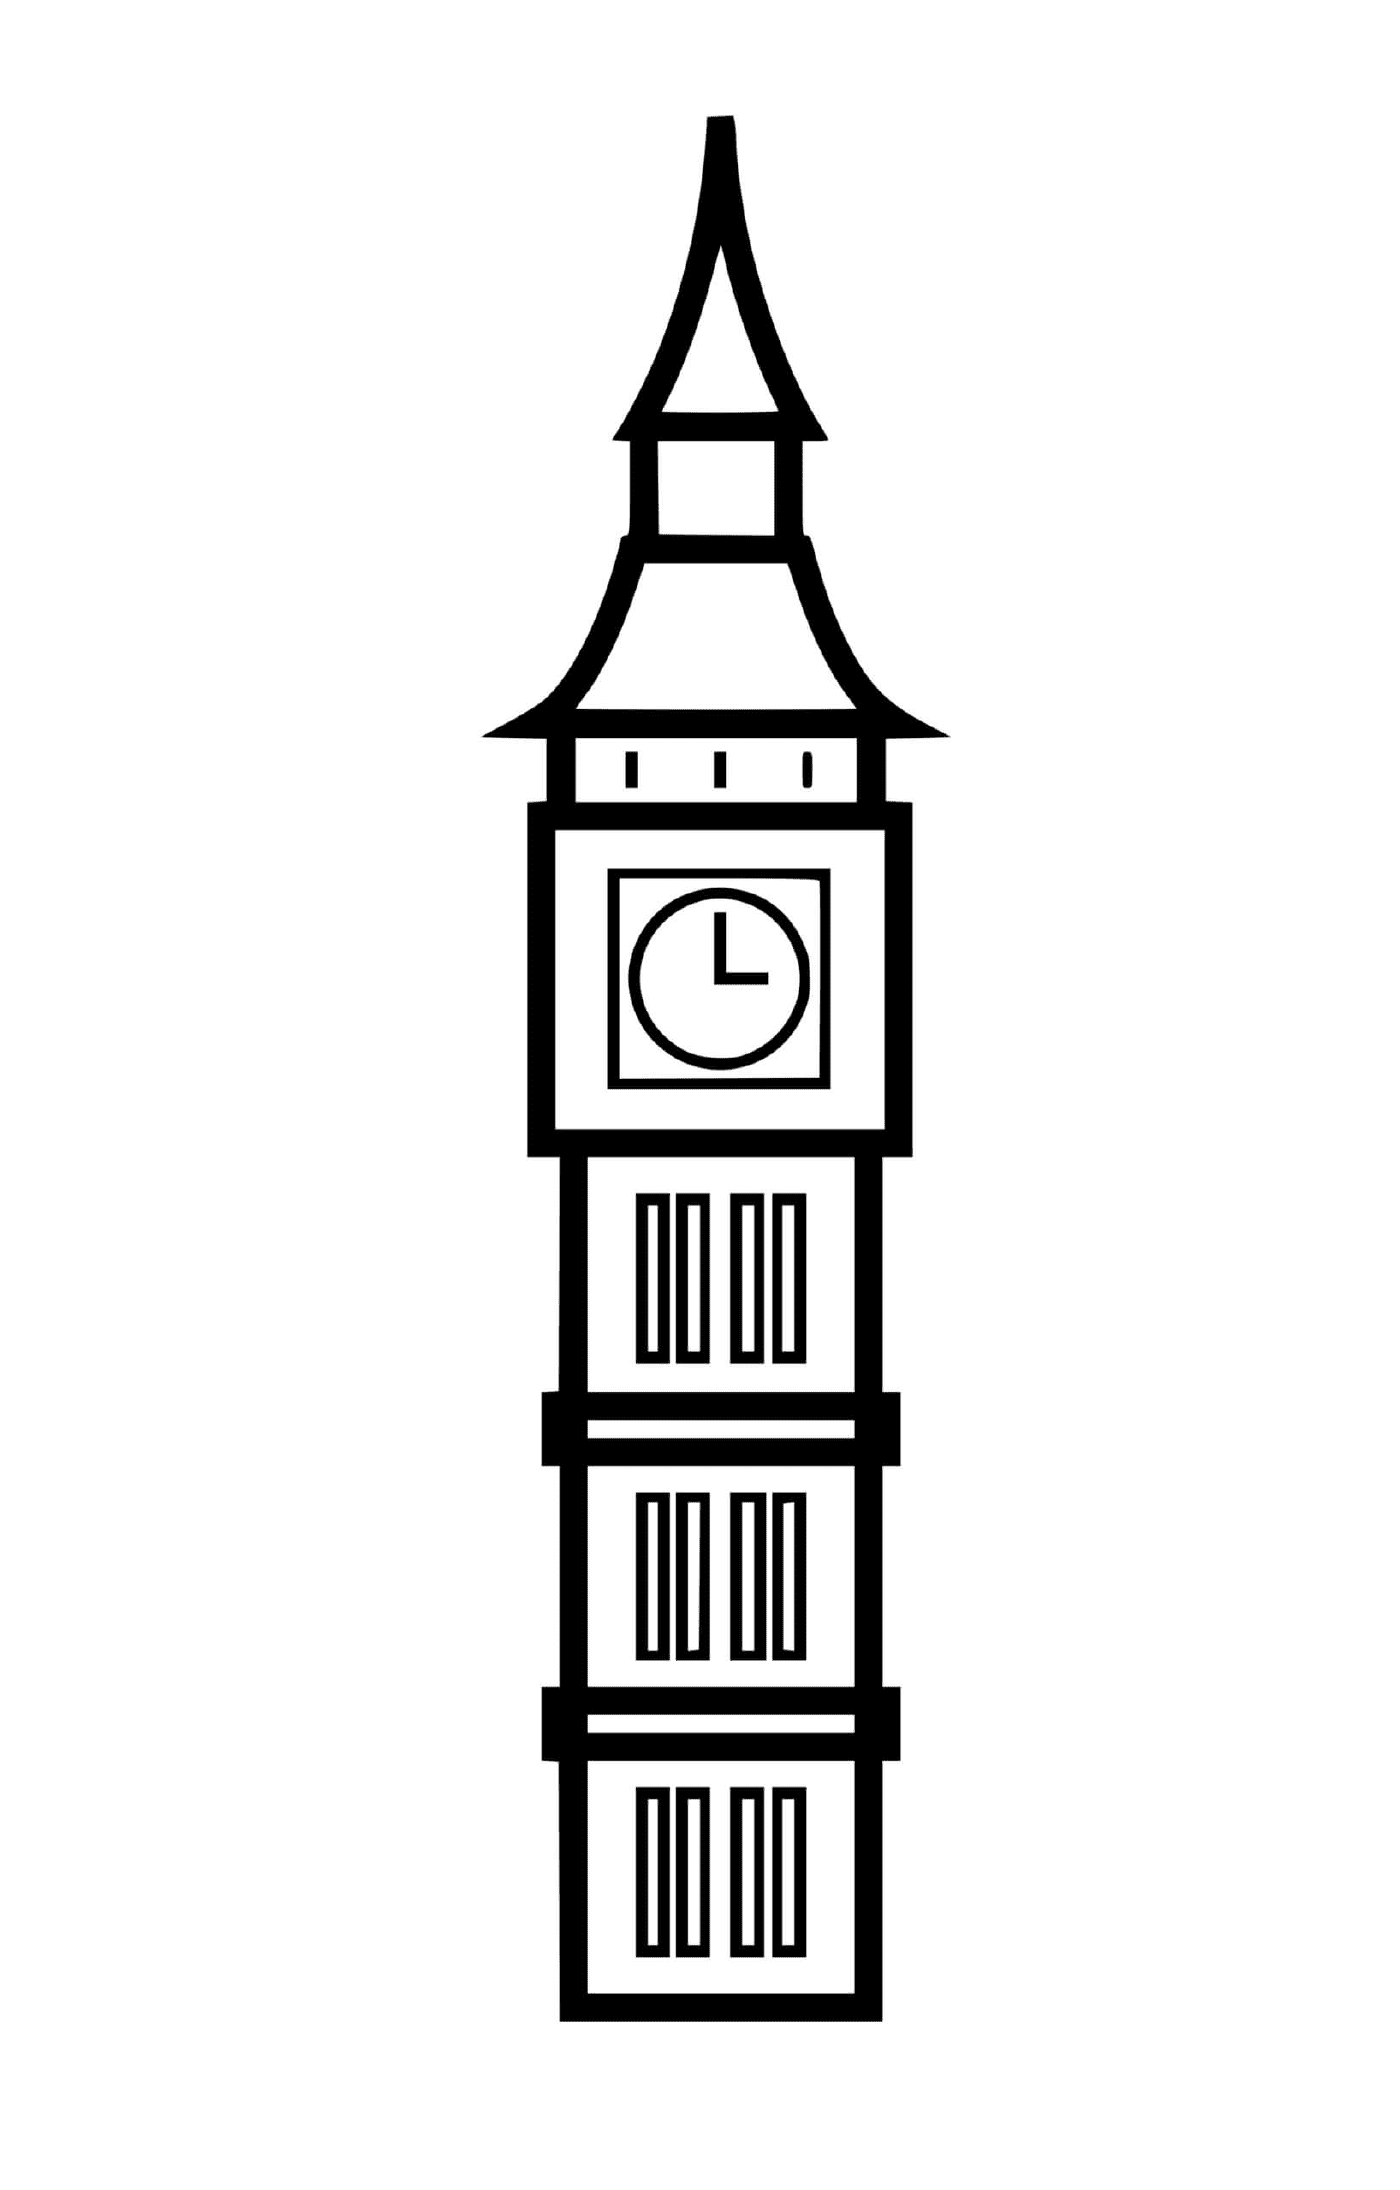   Big Ben la tour horloge du palais 